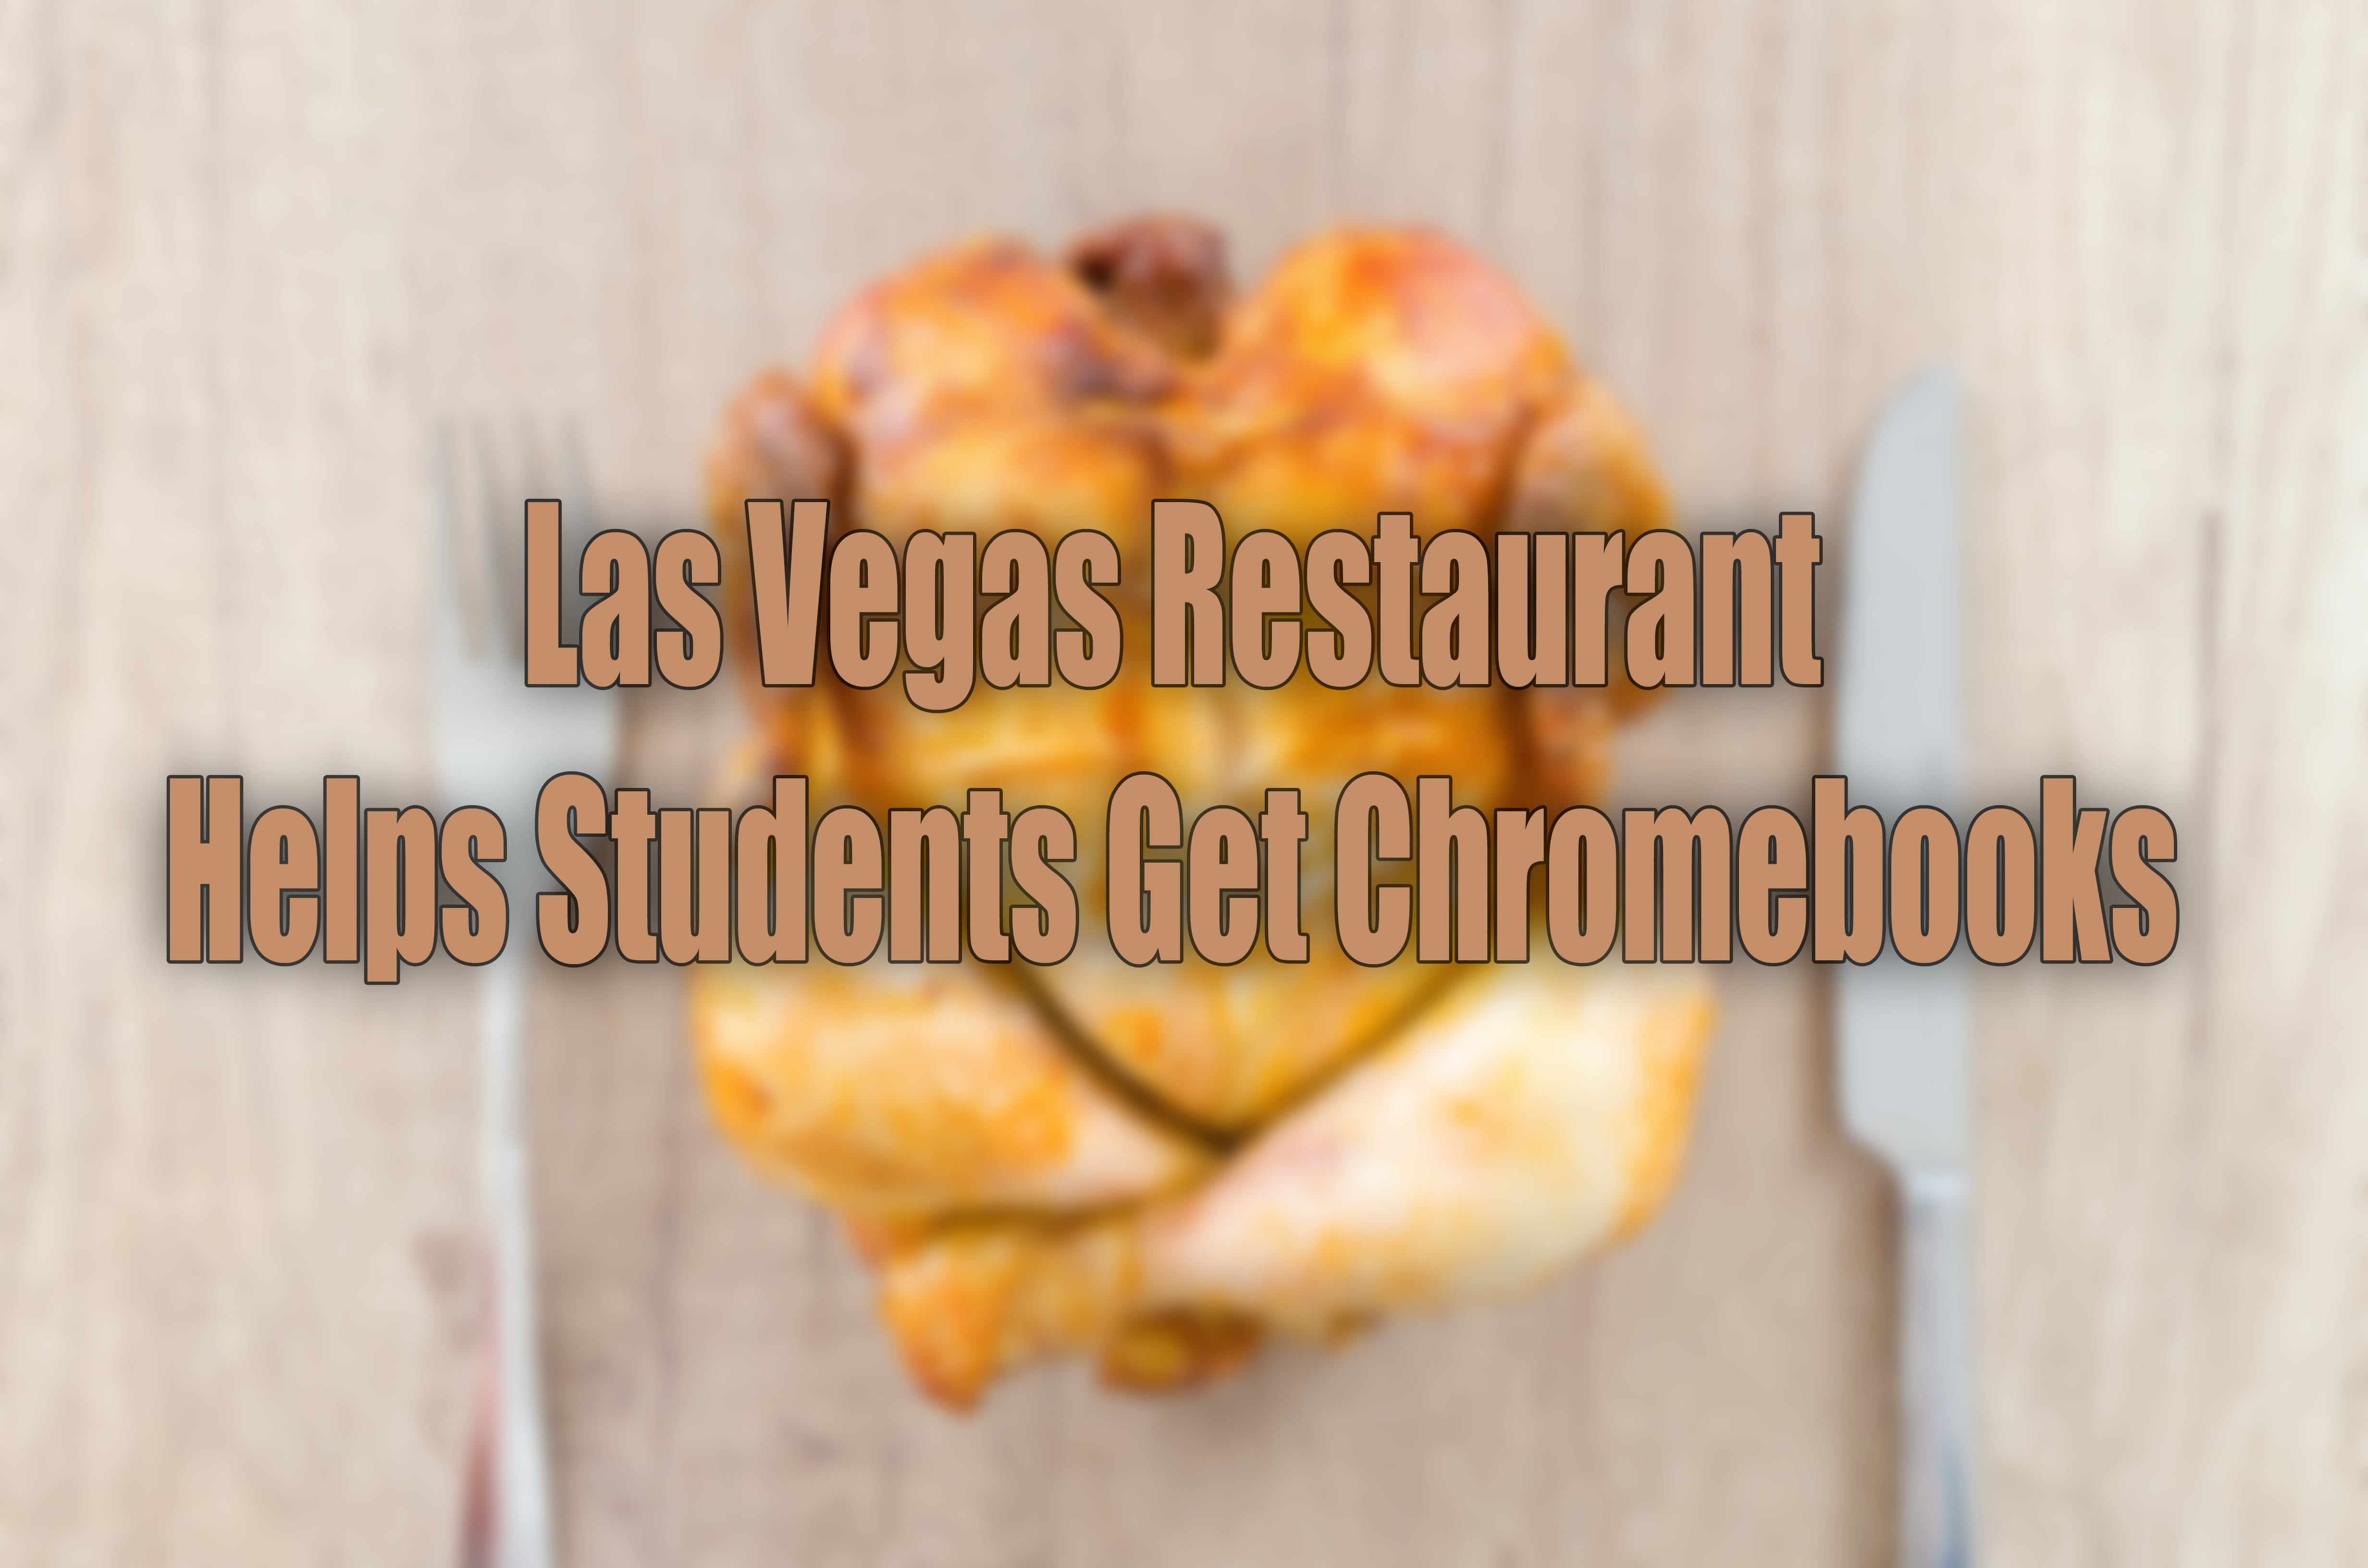 Students Get Chromebooks from Restaurant in Las Vegas.jpg